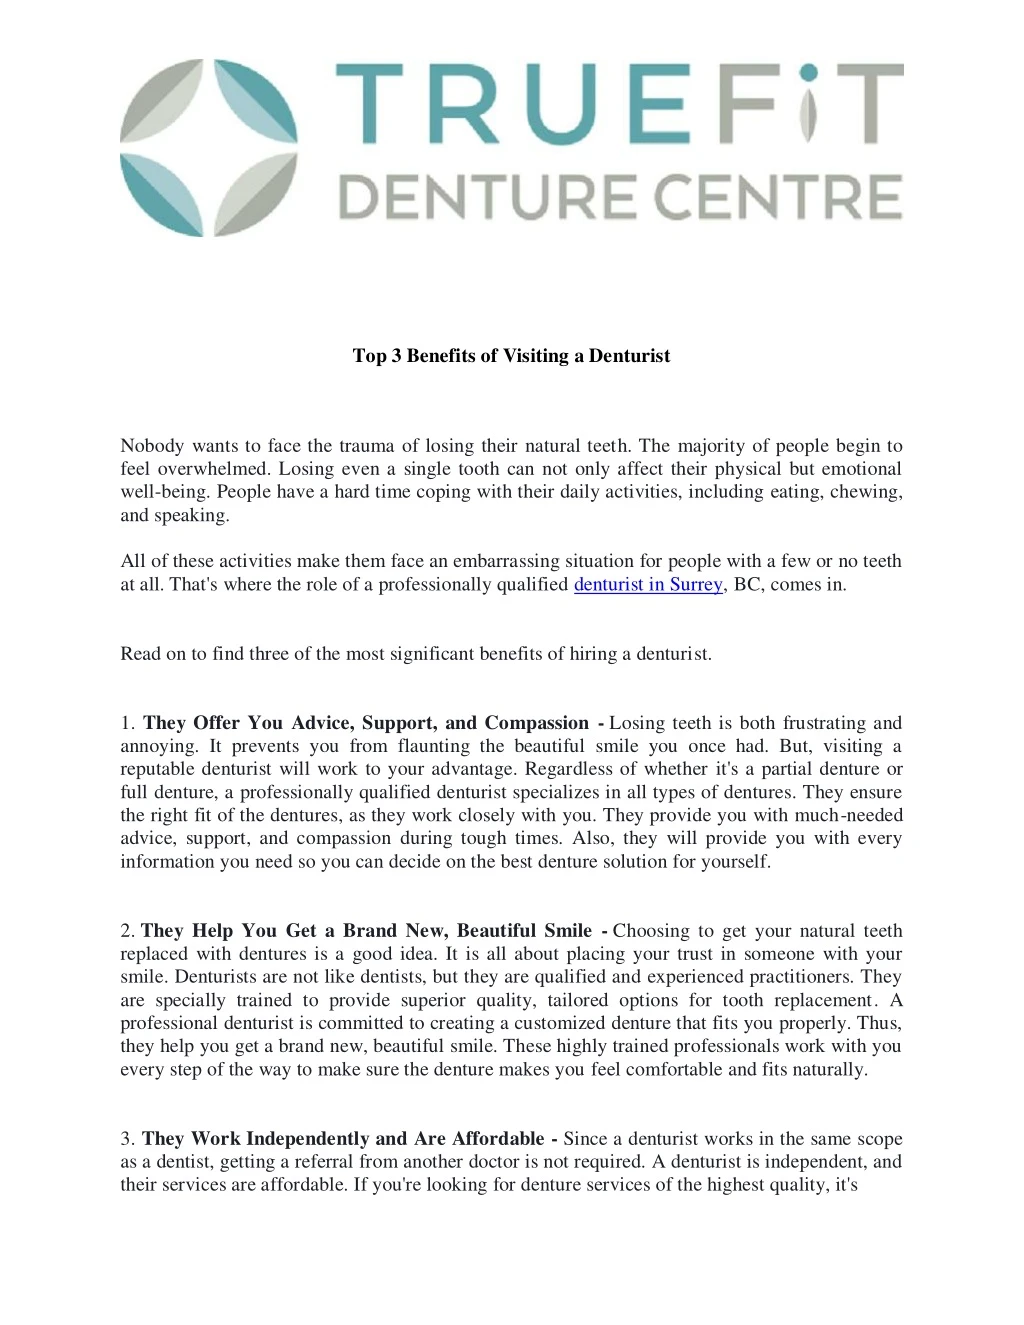 top 3 benefits of visiting a denturist